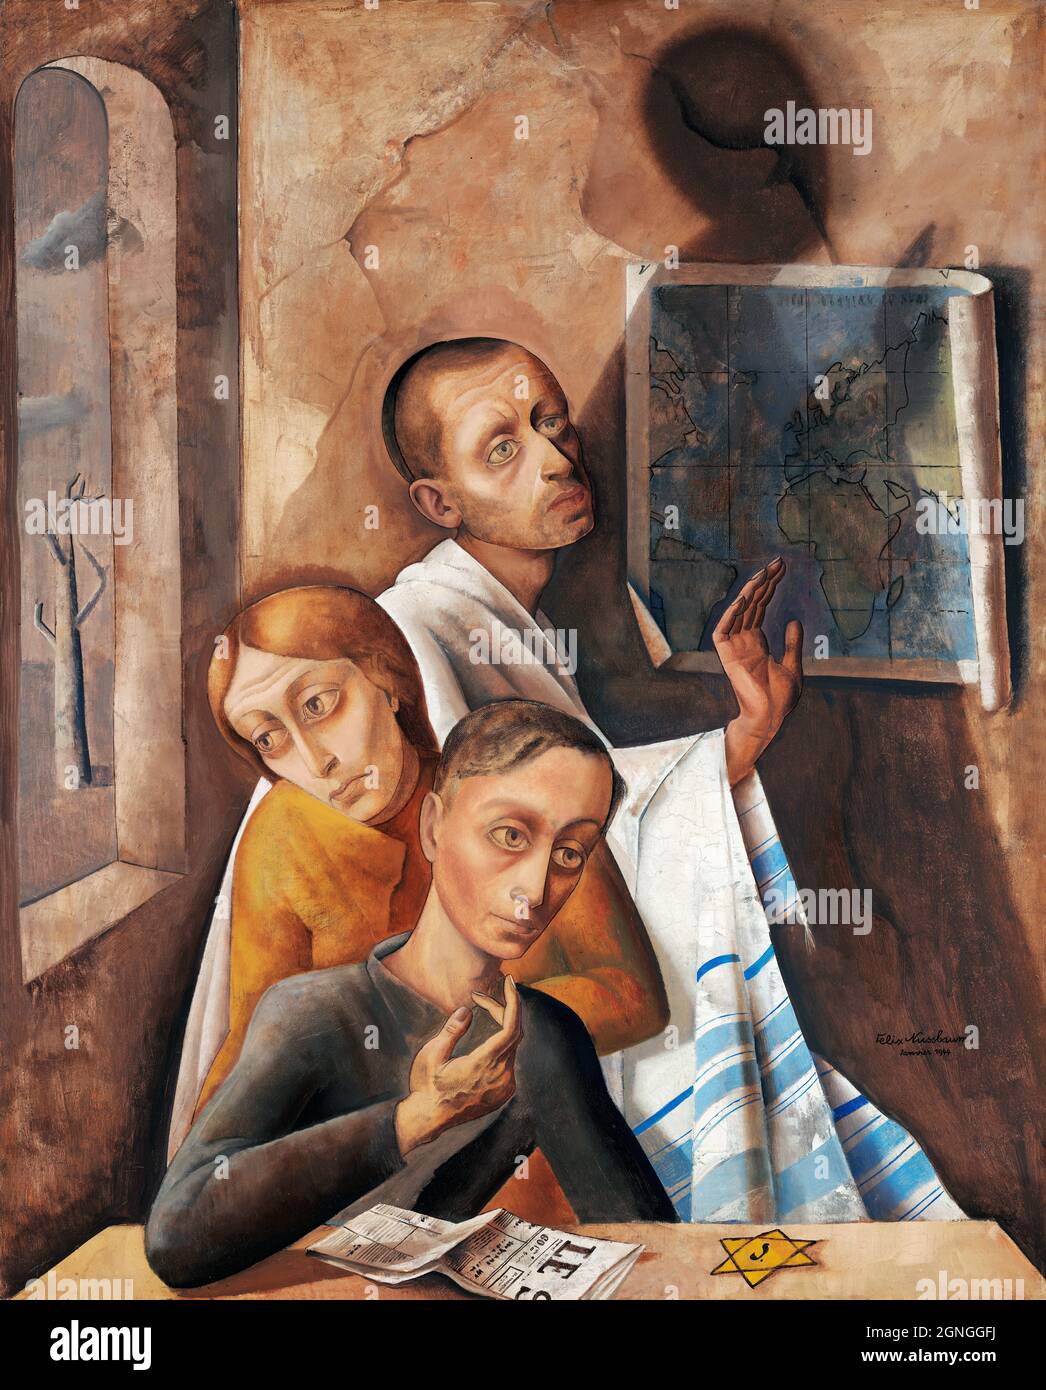 Autorretrato en escondite del artista judío-alemán Felix Nussbaum (1904-1944), óleo sobre lienzo, 1944 Foto de stock